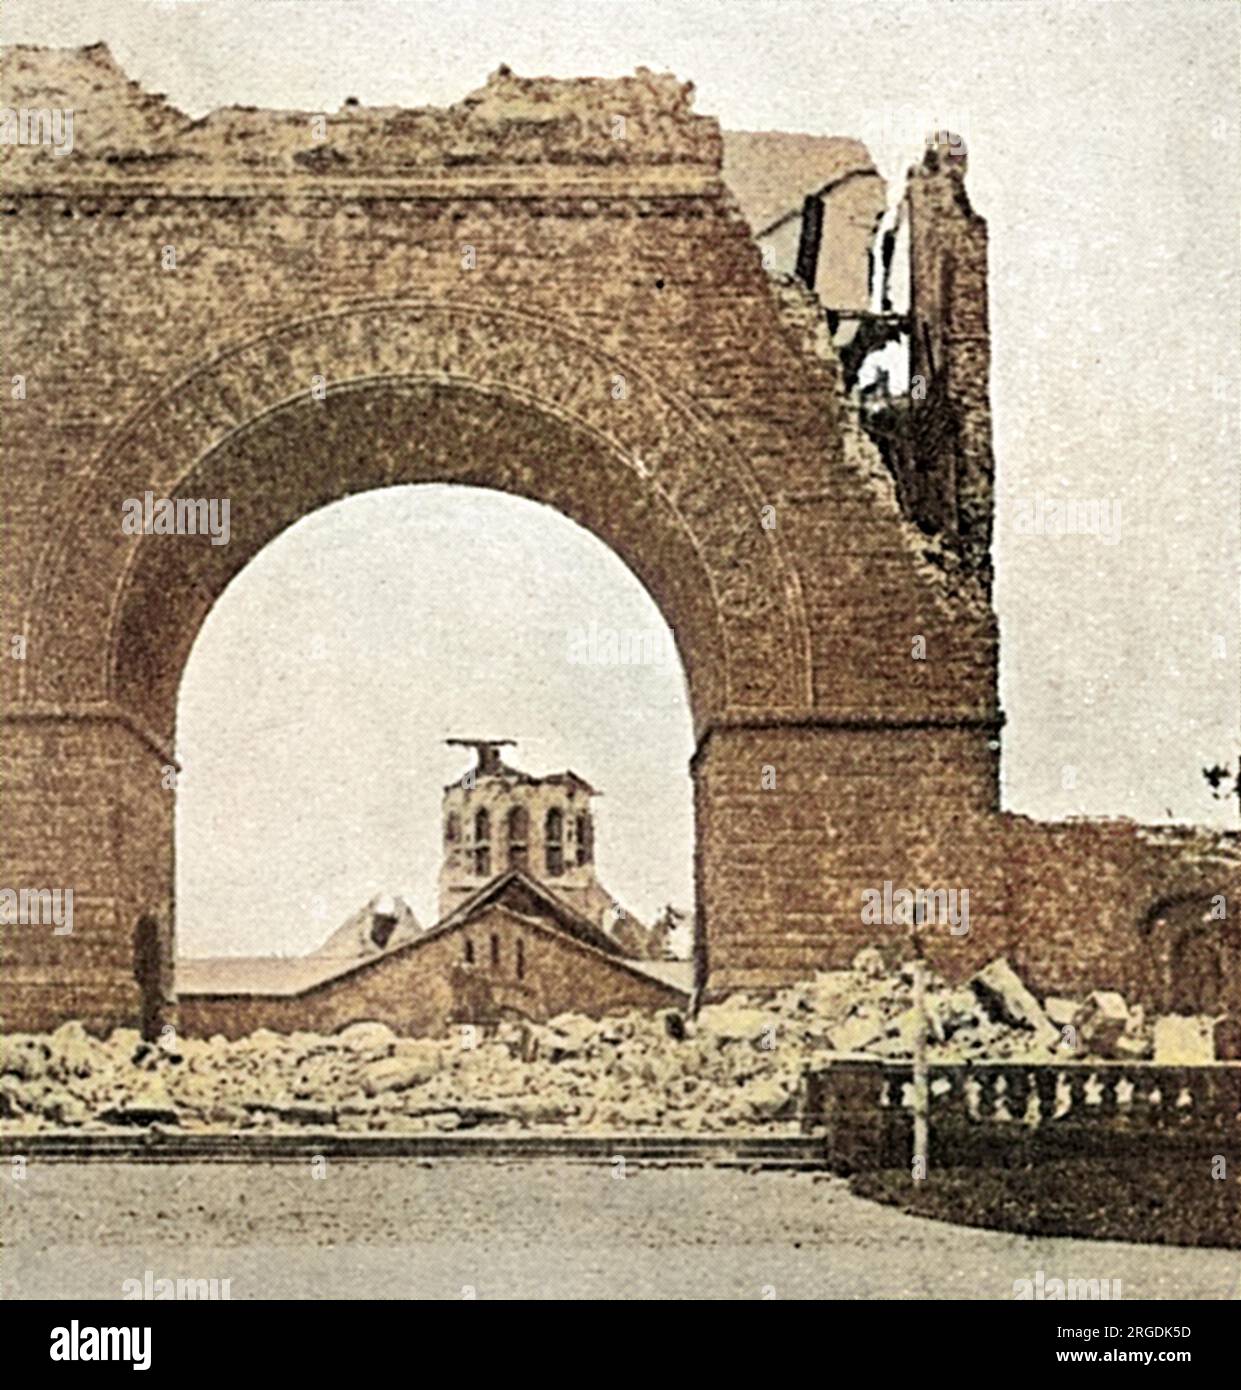 Das Tor zur Leland Stanford University außerhalb von San Francisco, zerschmettert durch das Erdbeben. Das Erdbeben ereignete sich am 18. April 1906 in San Francisco, Kalifornien, USA, das sich über den San-Andreas-Fehler erstreckt. Die Messung von 7,9 auf der richter-Skala führte bei dem Erdbeben und den anschließenden Bränden zum Verlust von 3000 Menschenleben und mehr als 300.000 Wohnungen. Stockfoto